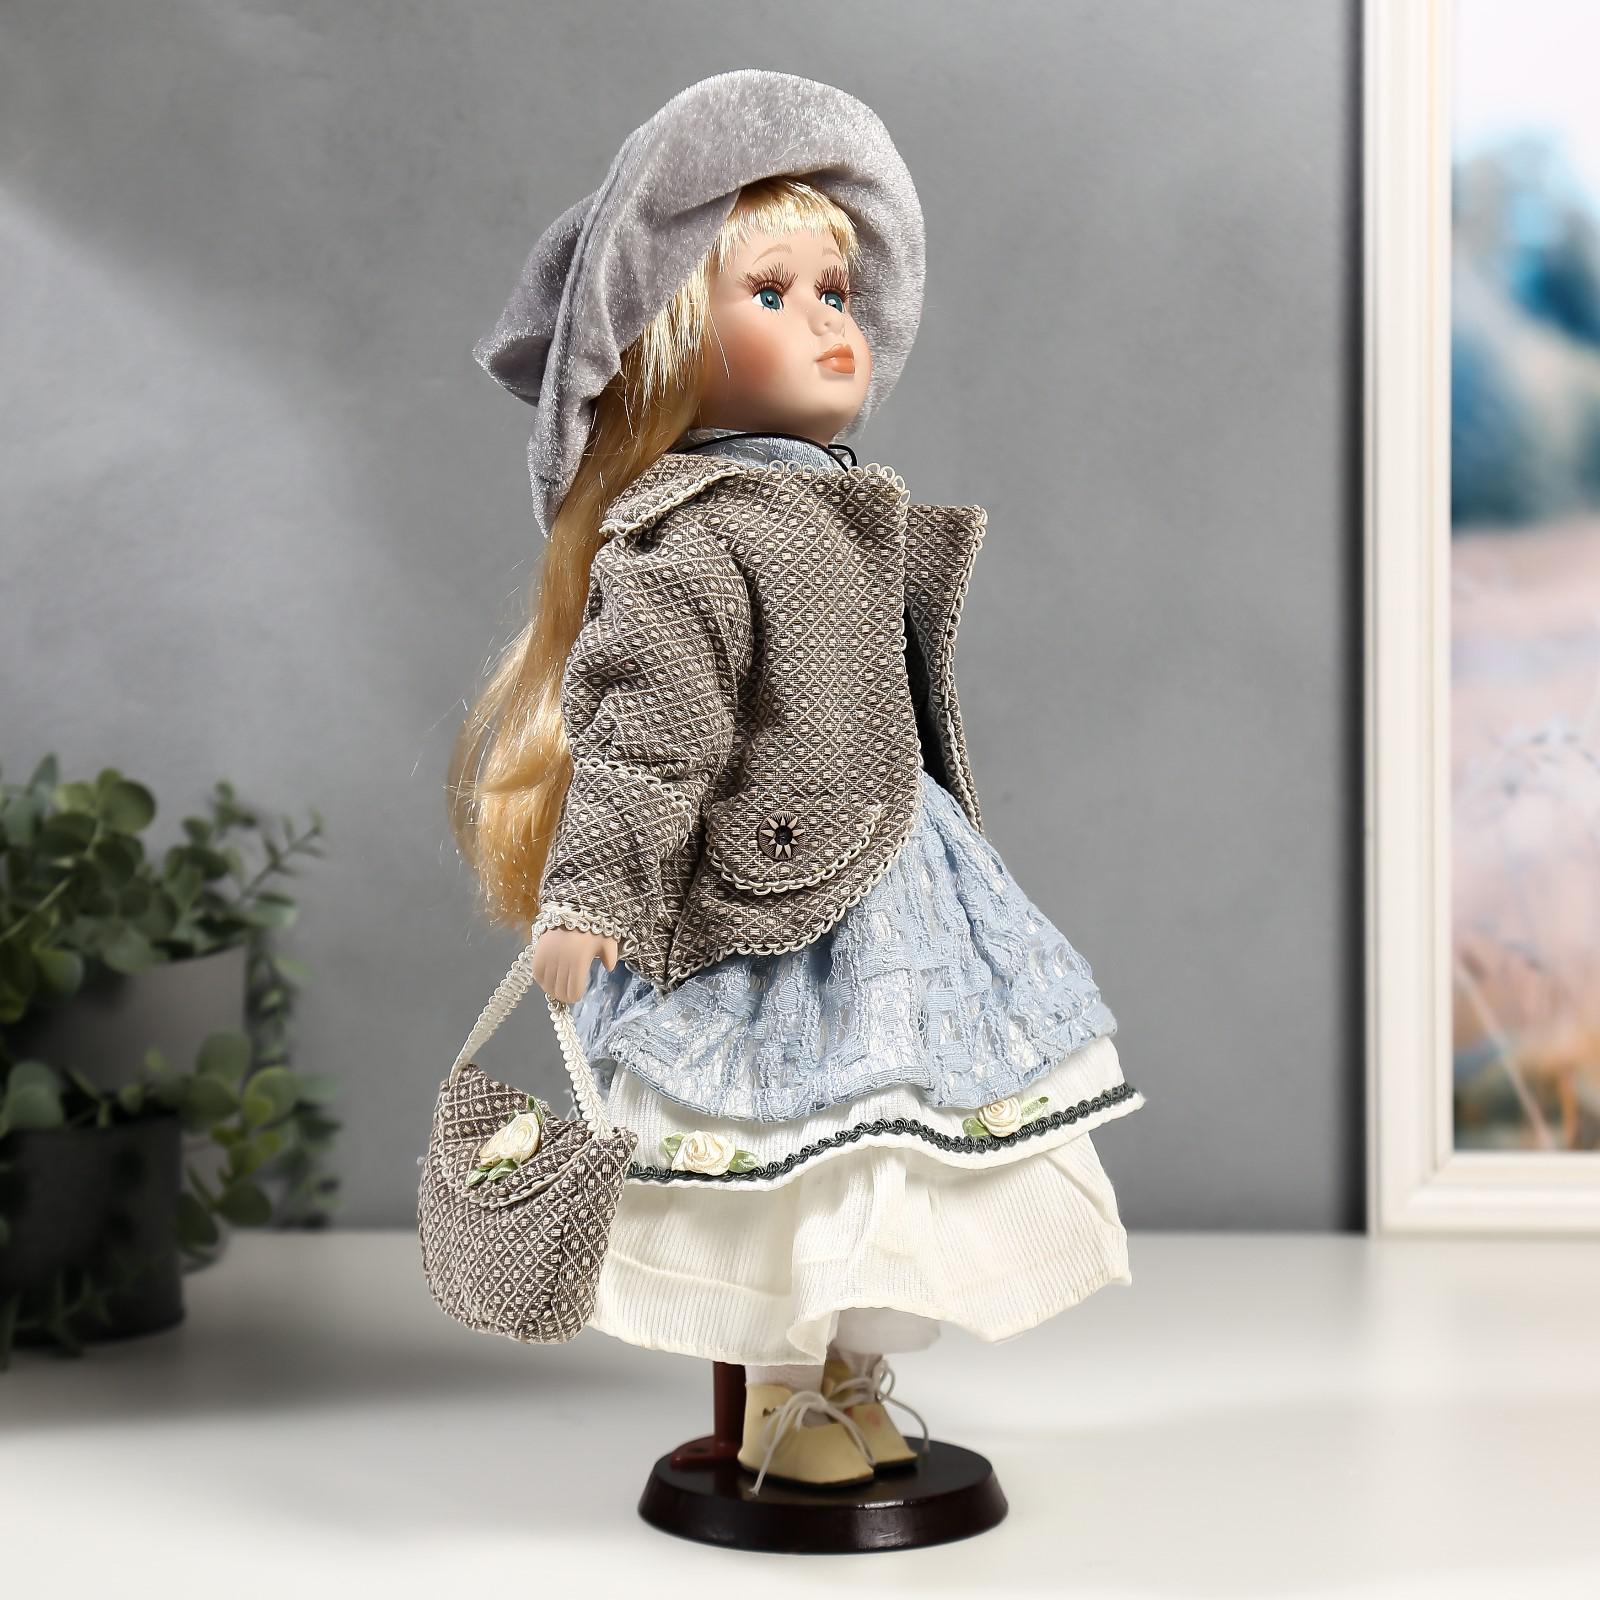 Кукла коллекционная Зимнее волшебство керамика «Лиза в голубом кружевном платье и серой курточке» 40 см - фото 2